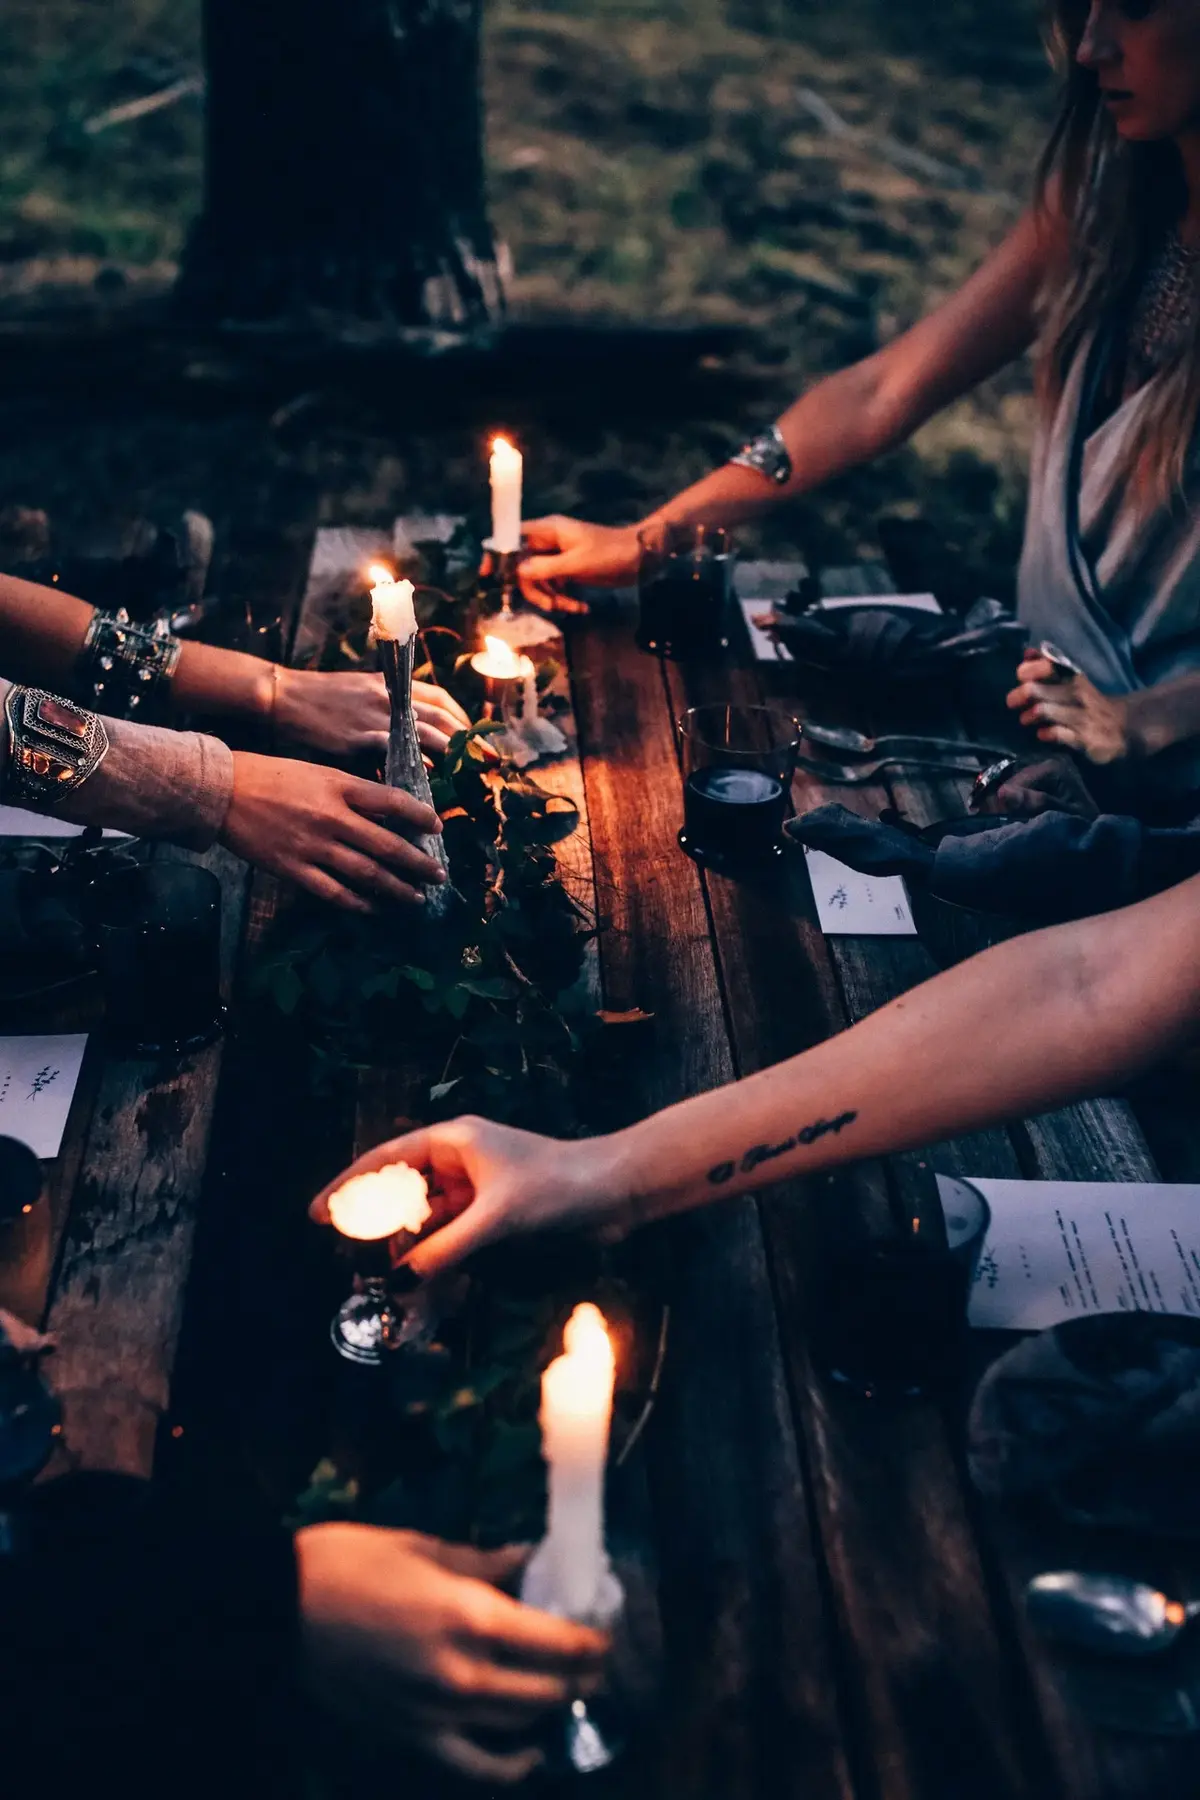 Kobiece ręce trzymające zapłon świeczki na tle ciemnego, podłużnego drewnianego blatu